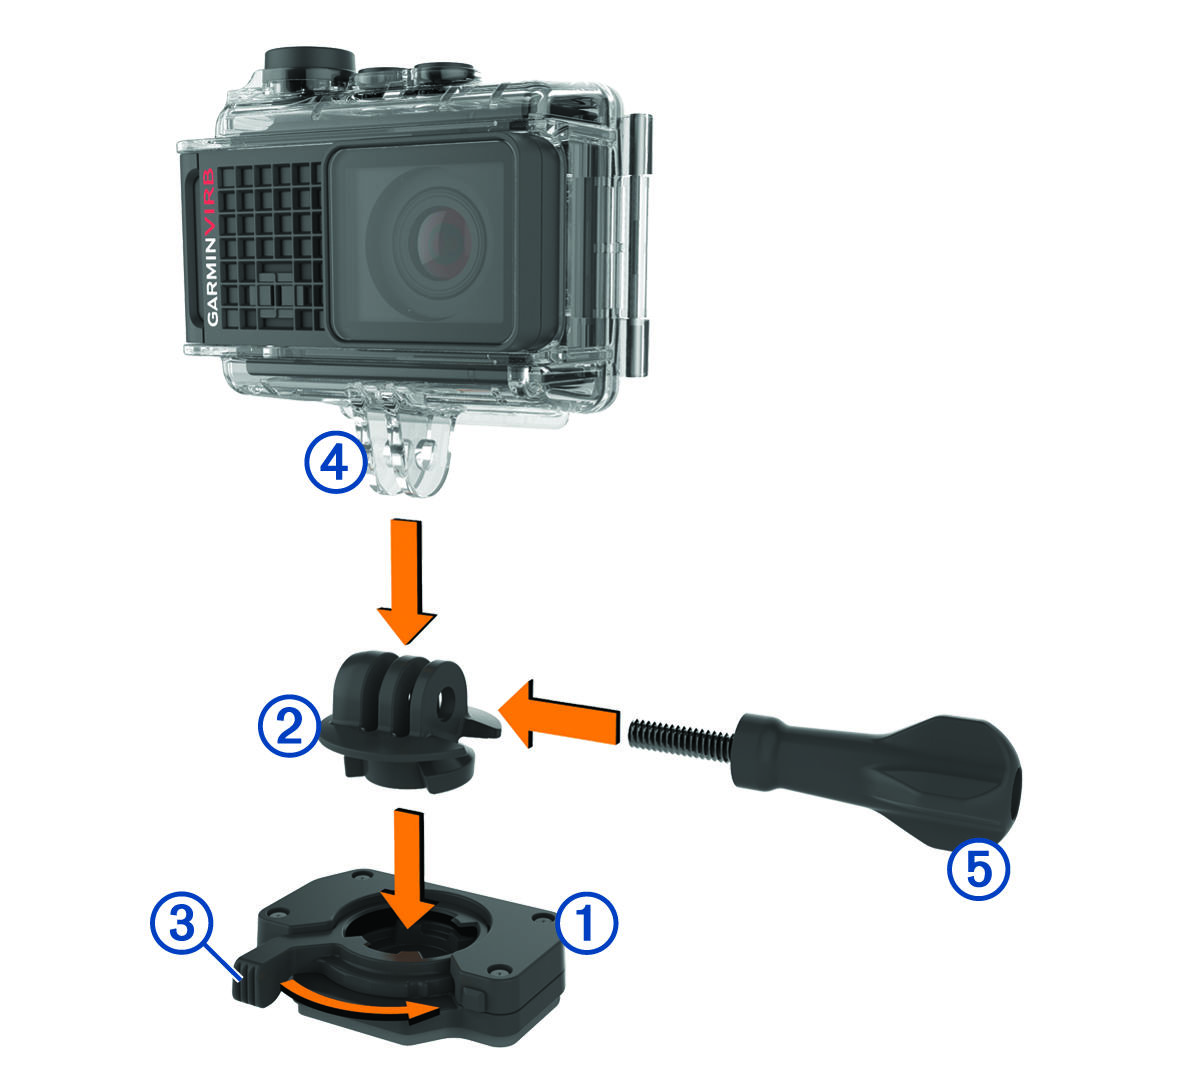 Adapter, camerasteun en duimschroef worden op de montagevoet geplaatst met hendel met toelichtingen